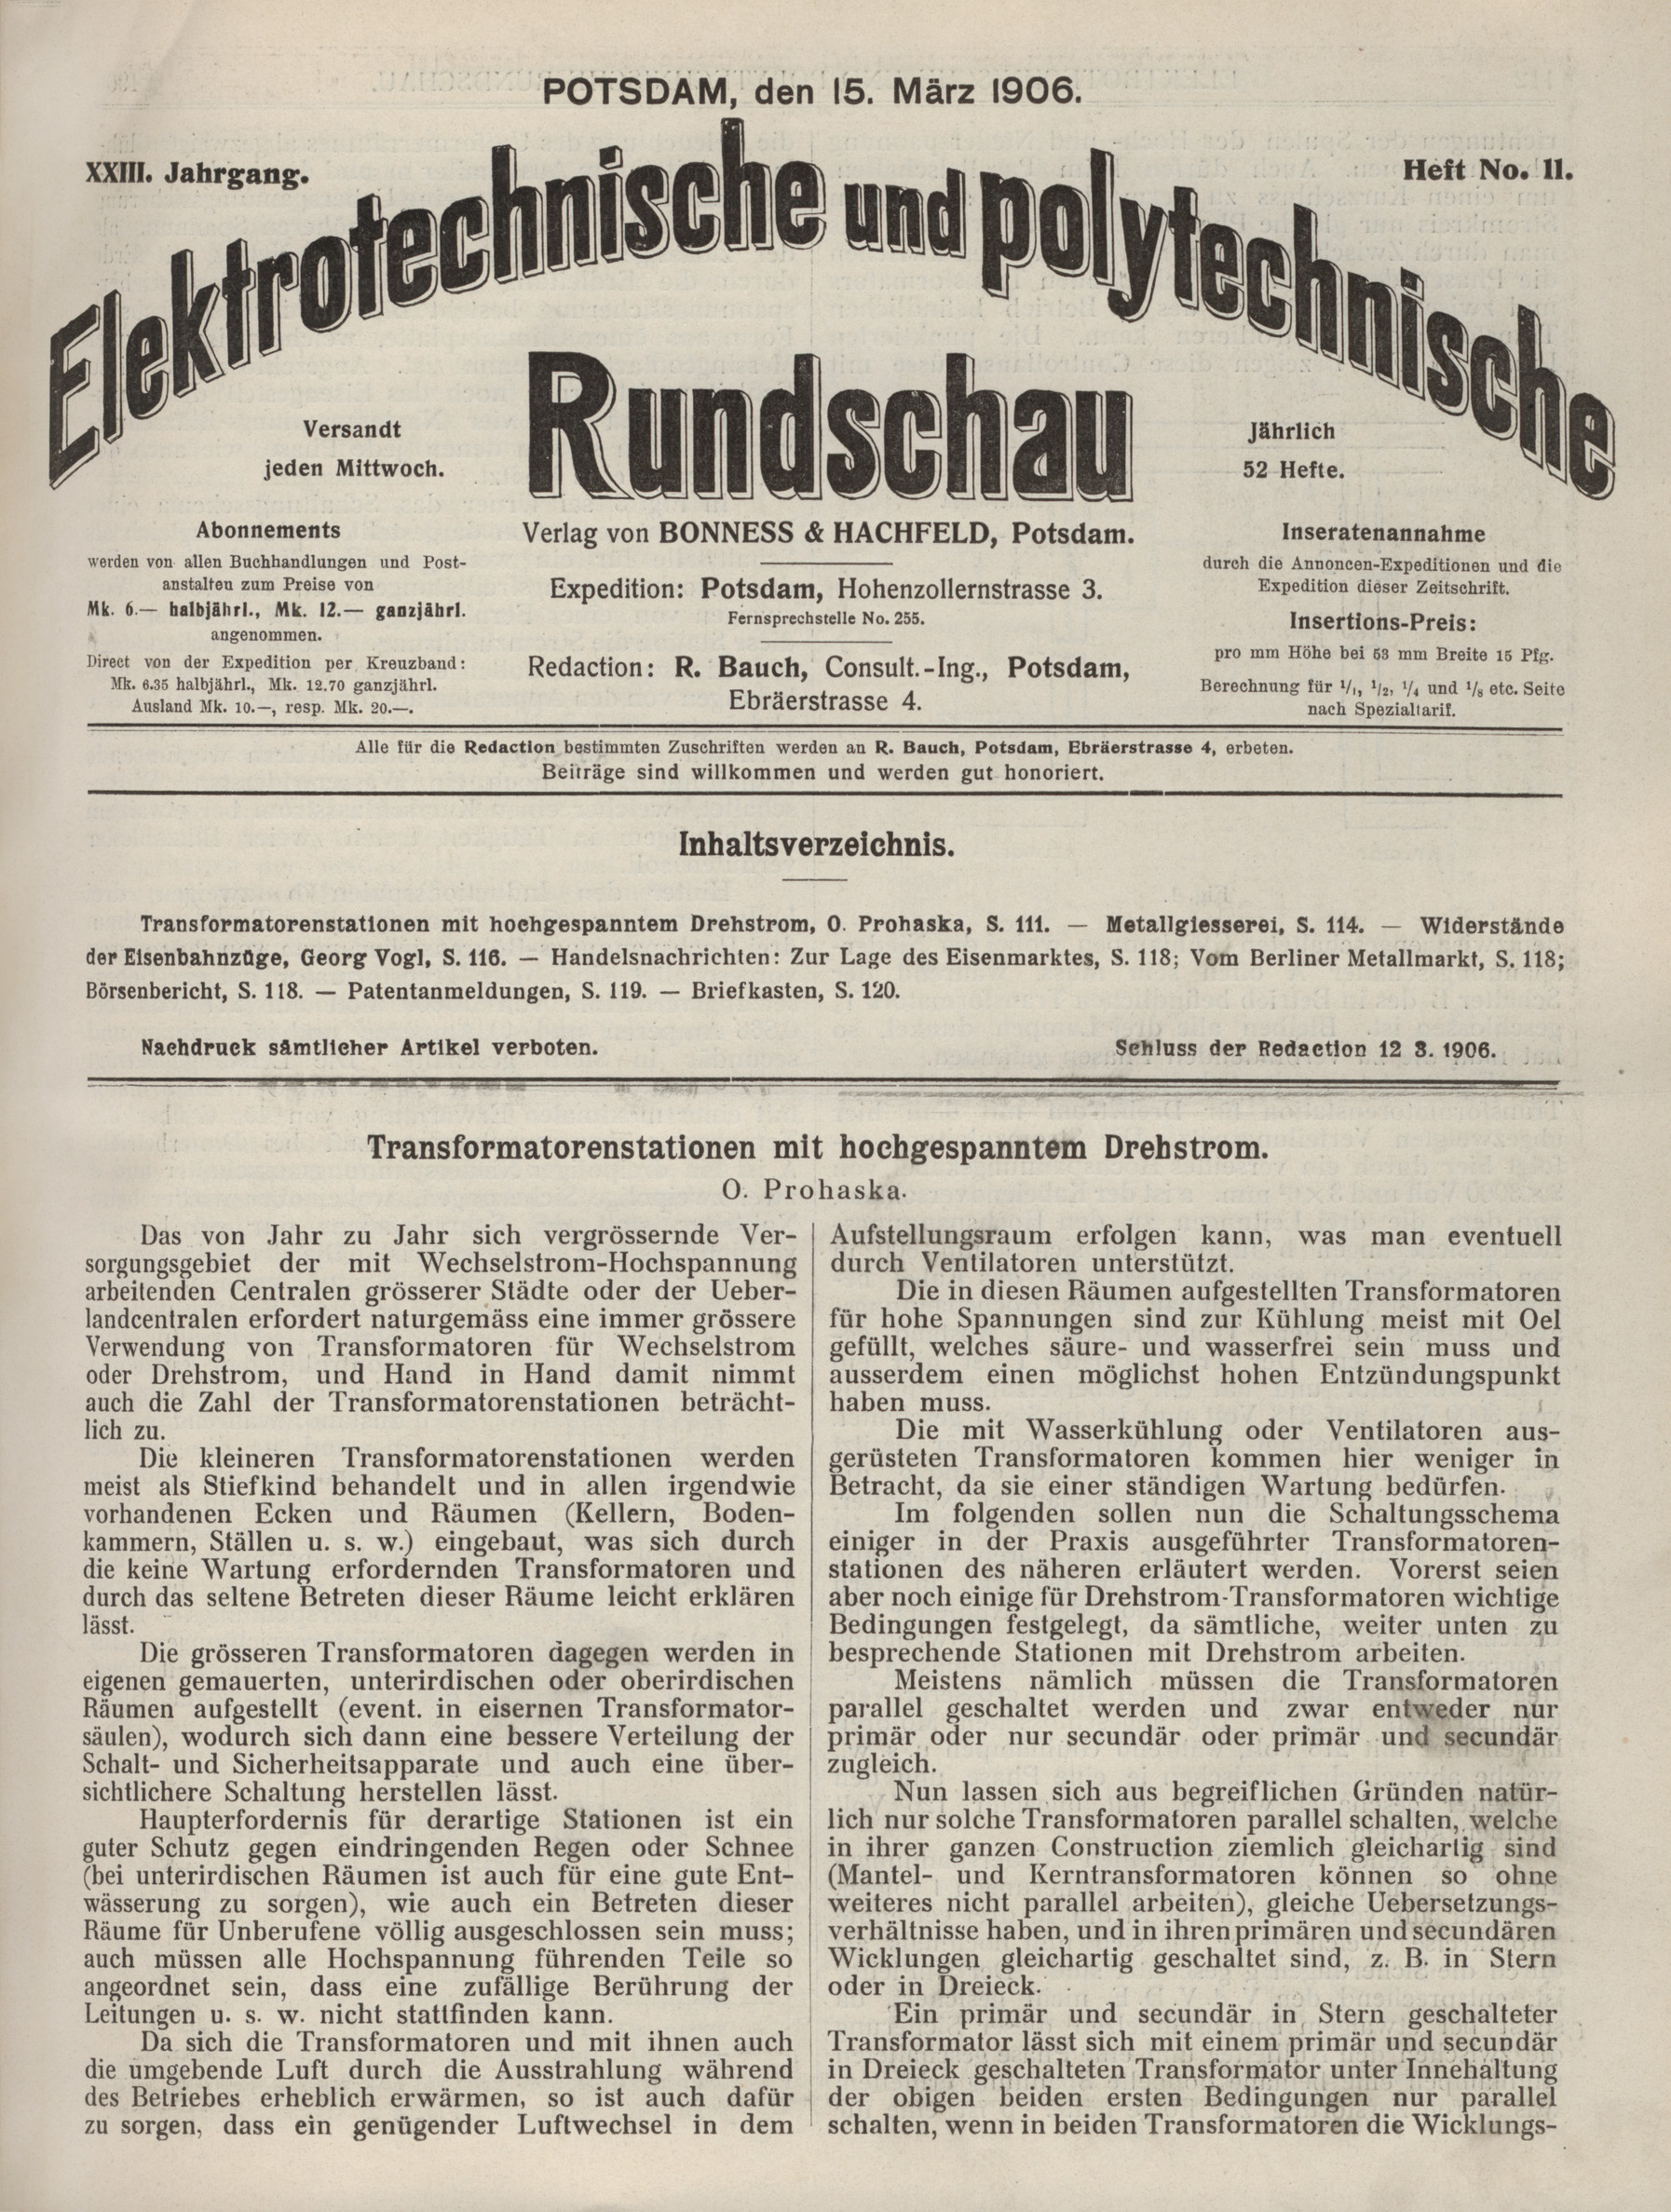 Elektrotechnische und polytechnische Rundschau, XXIII. Jahrgang, Heft No. 11